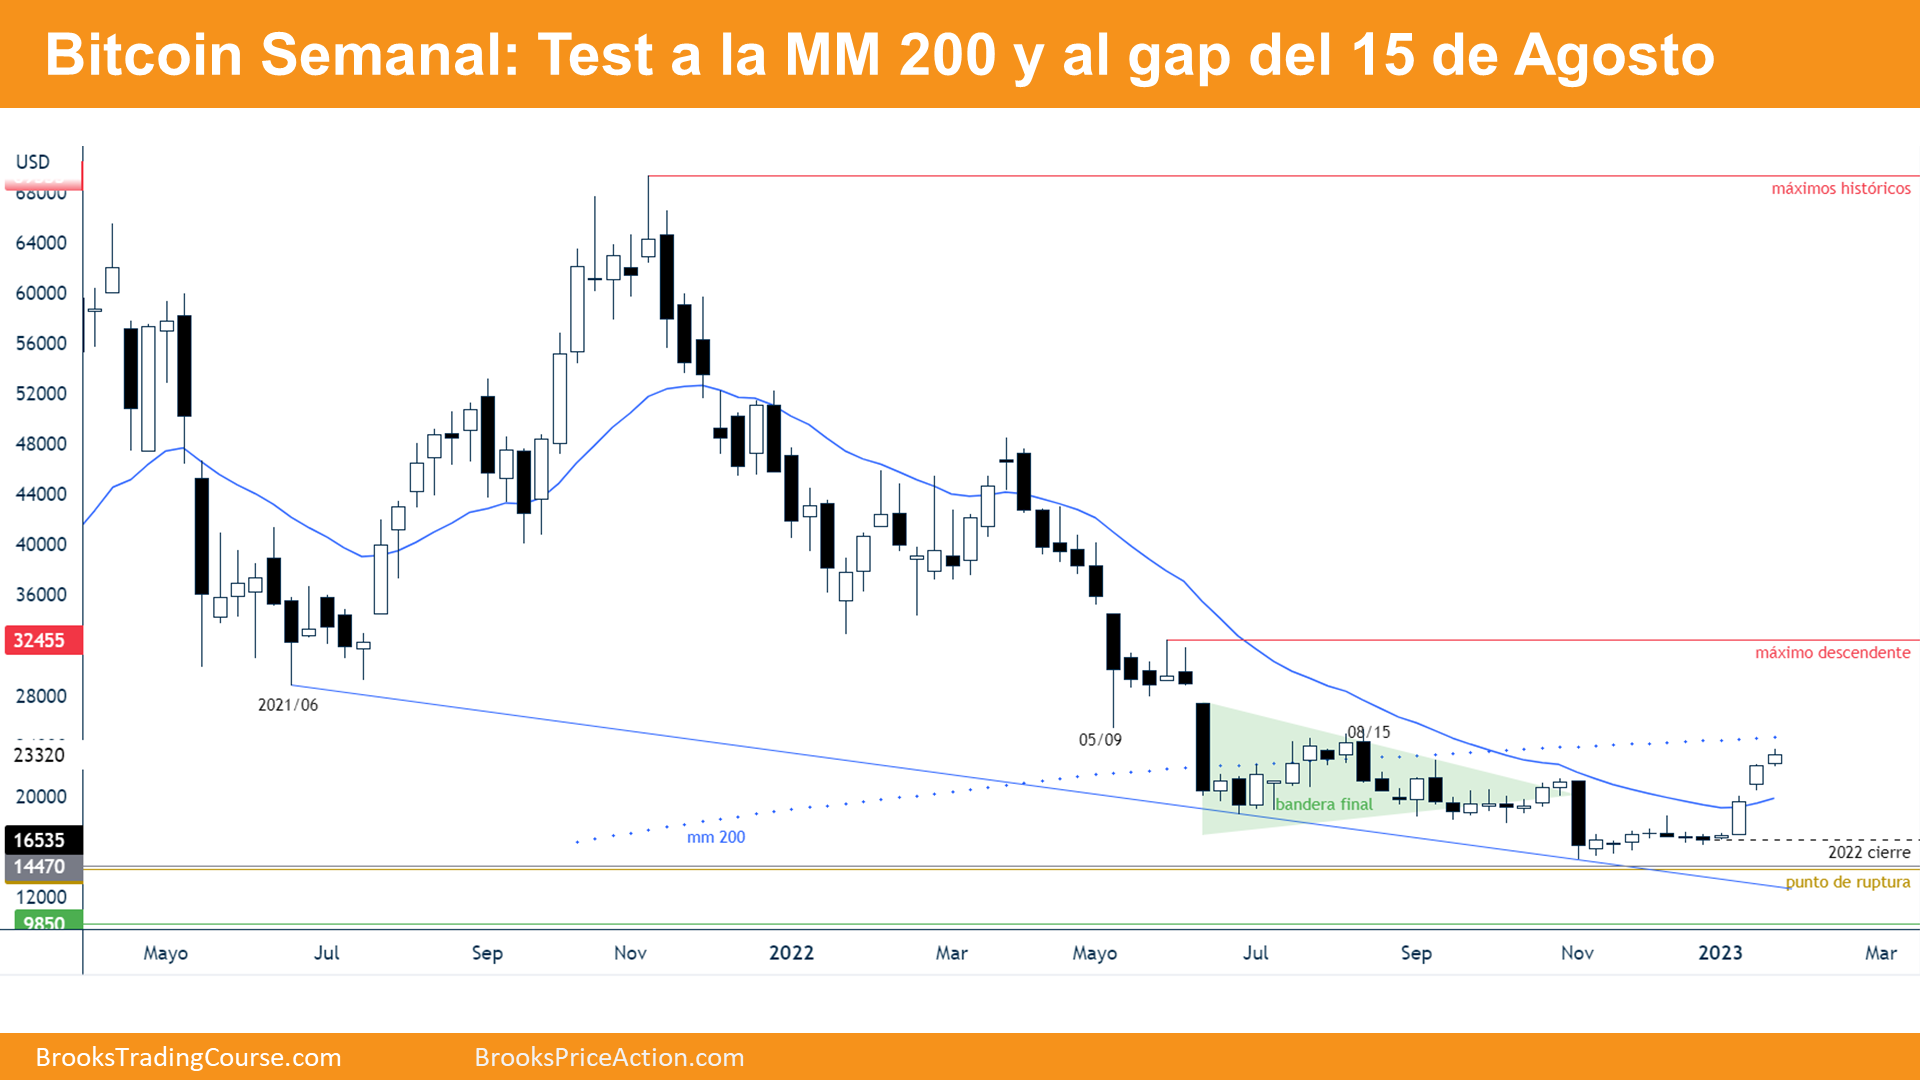 Bitcoin Semanal - Test a la MM 200 y al gap del 15 de Agosto